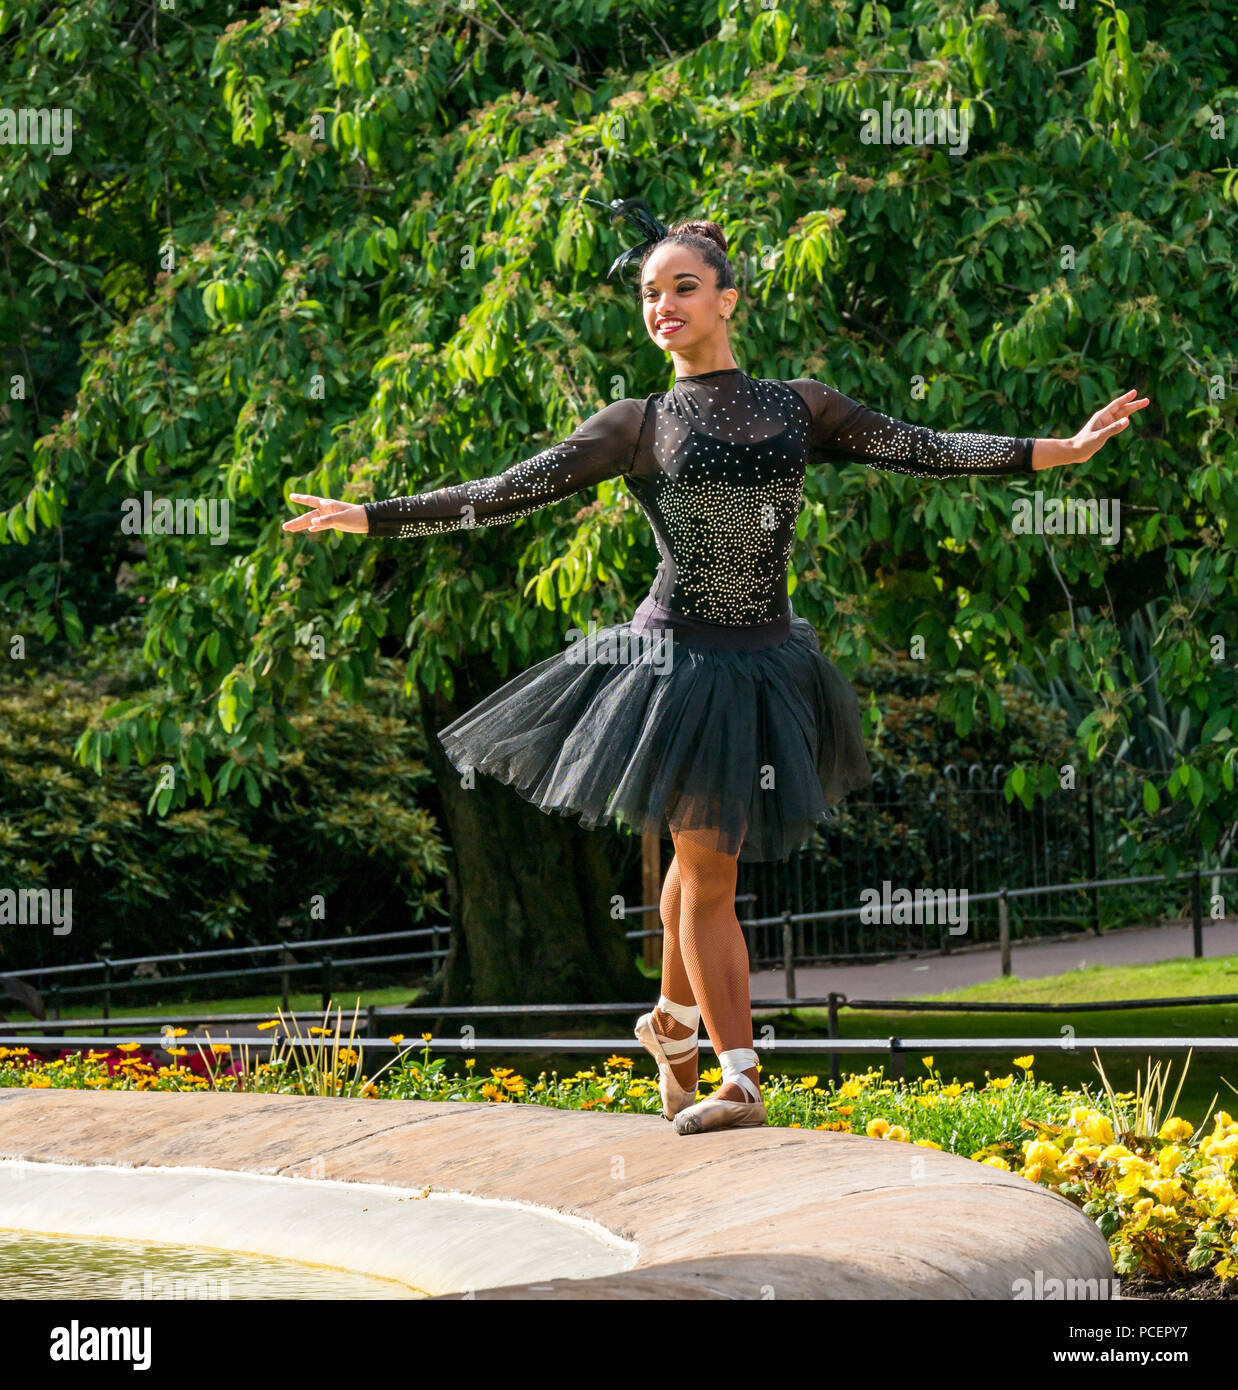 Photocall per la ballerina cubana Beatriz Torres Cuellar della UniverSoul Circus, i giardini di Princes Street, Edimburgo, Scozia, Regno Unito durante il Fringe Festival Foto Stock